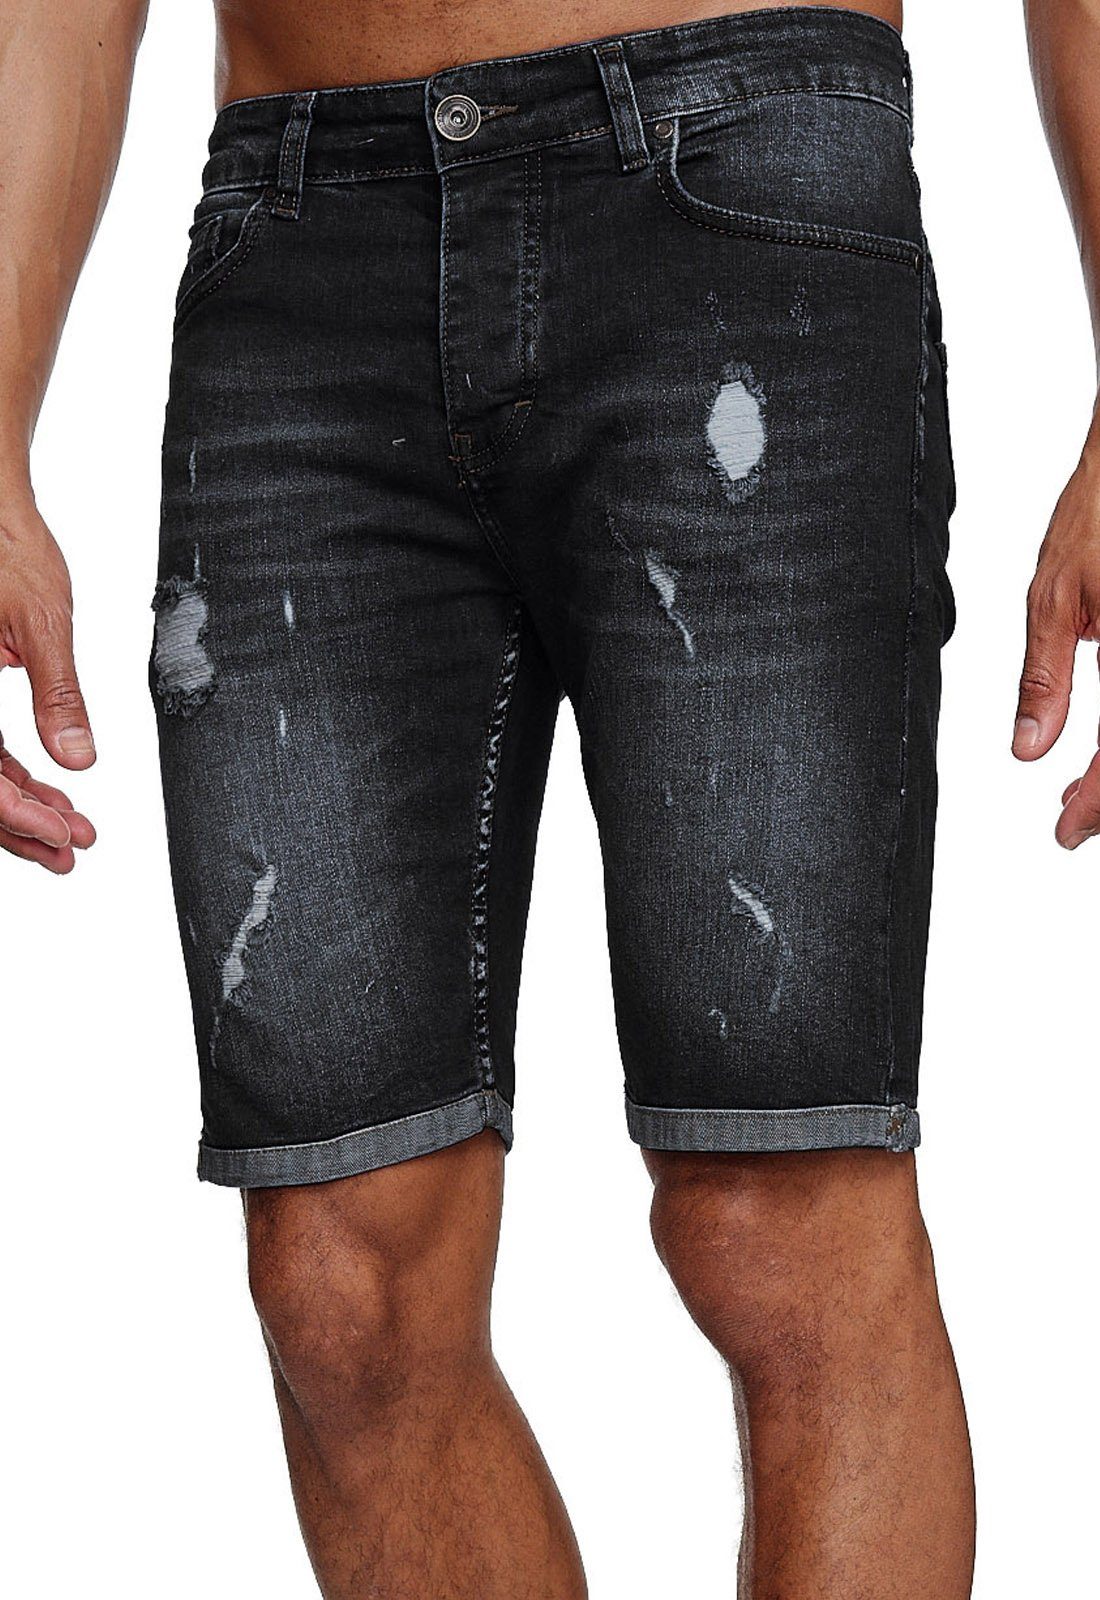 Reslad Jeansshorts Reslad Jeans Shorts Herren Kurze Hosen Sommer l Used Look Destroyed Destroyed Jeansbermudas Stretch Jeans-Hose schwarz